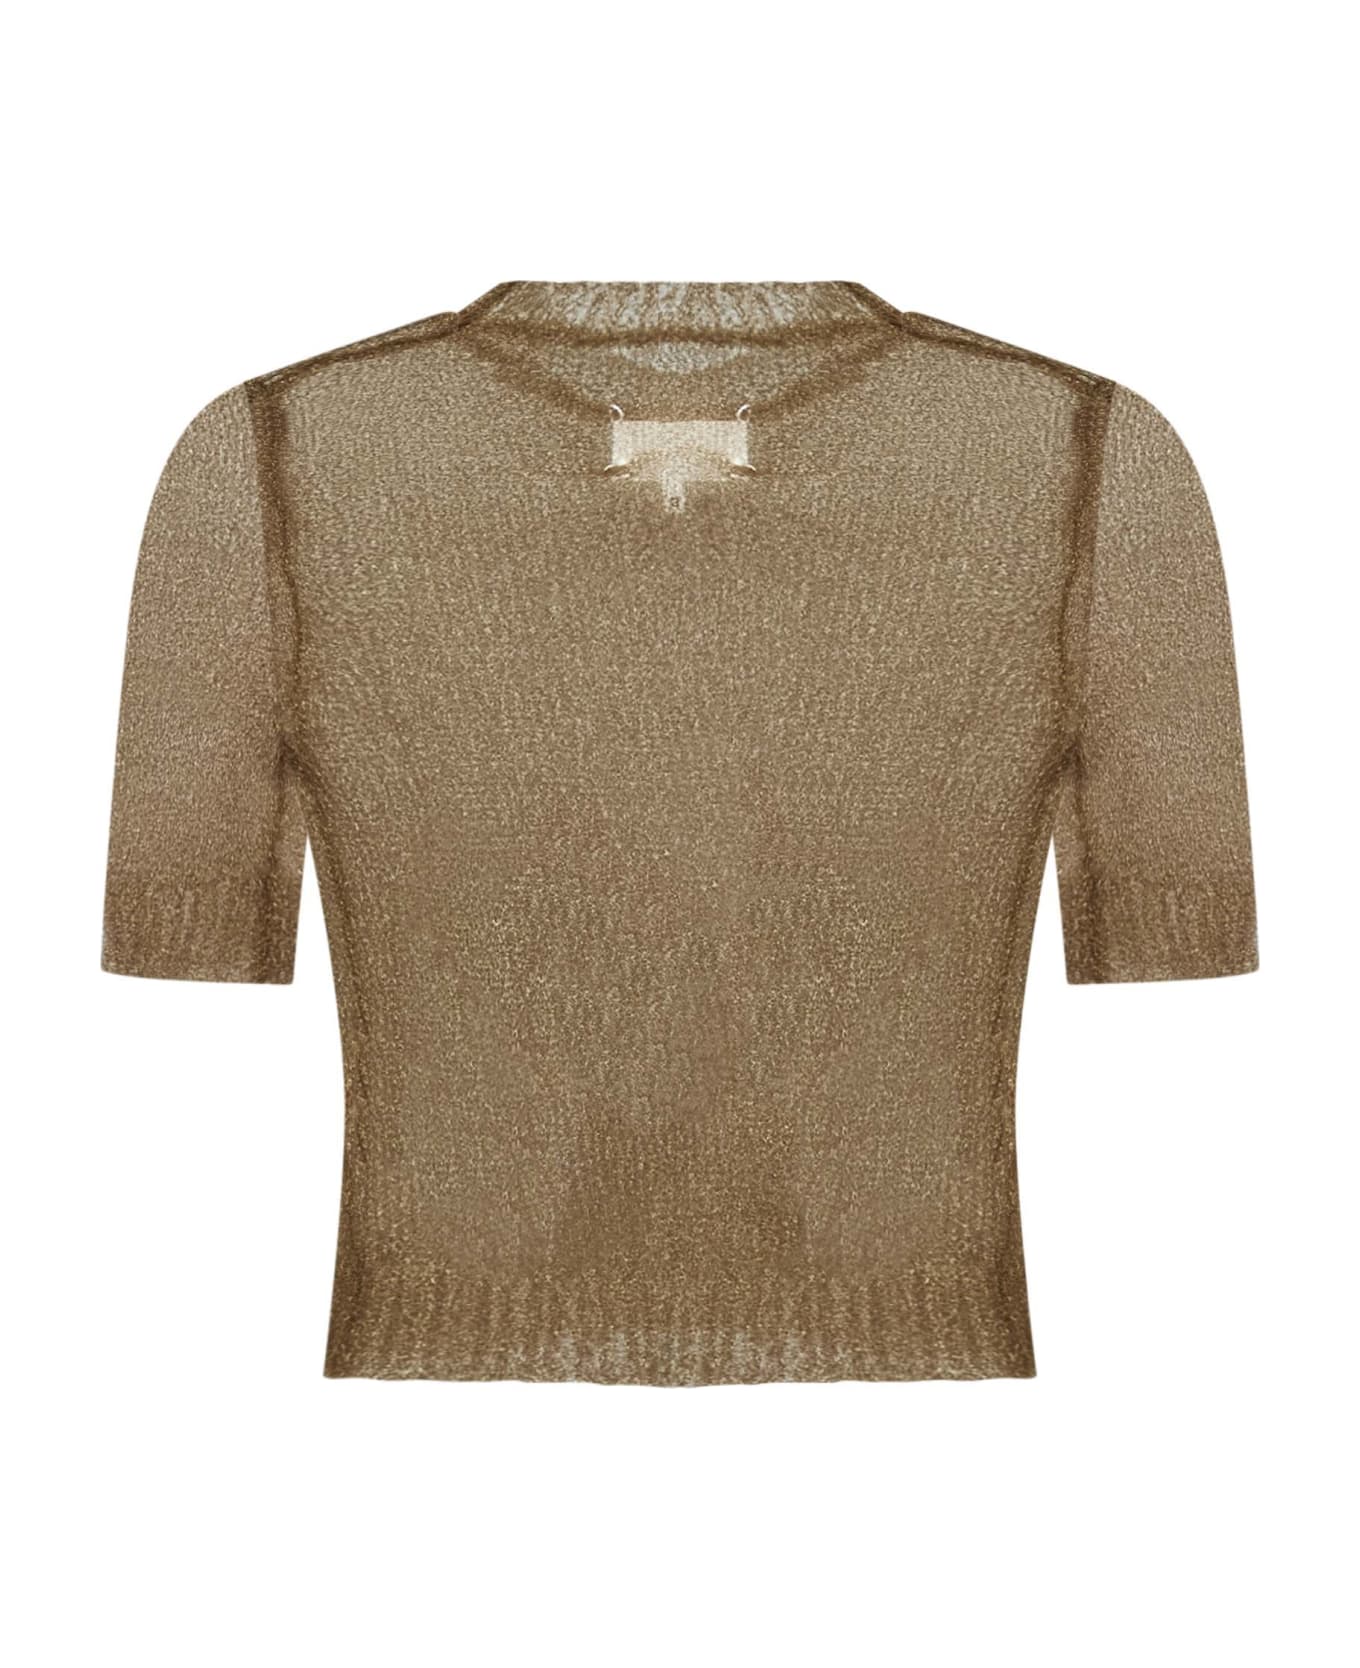 Maison Margiela Sweater - Golden